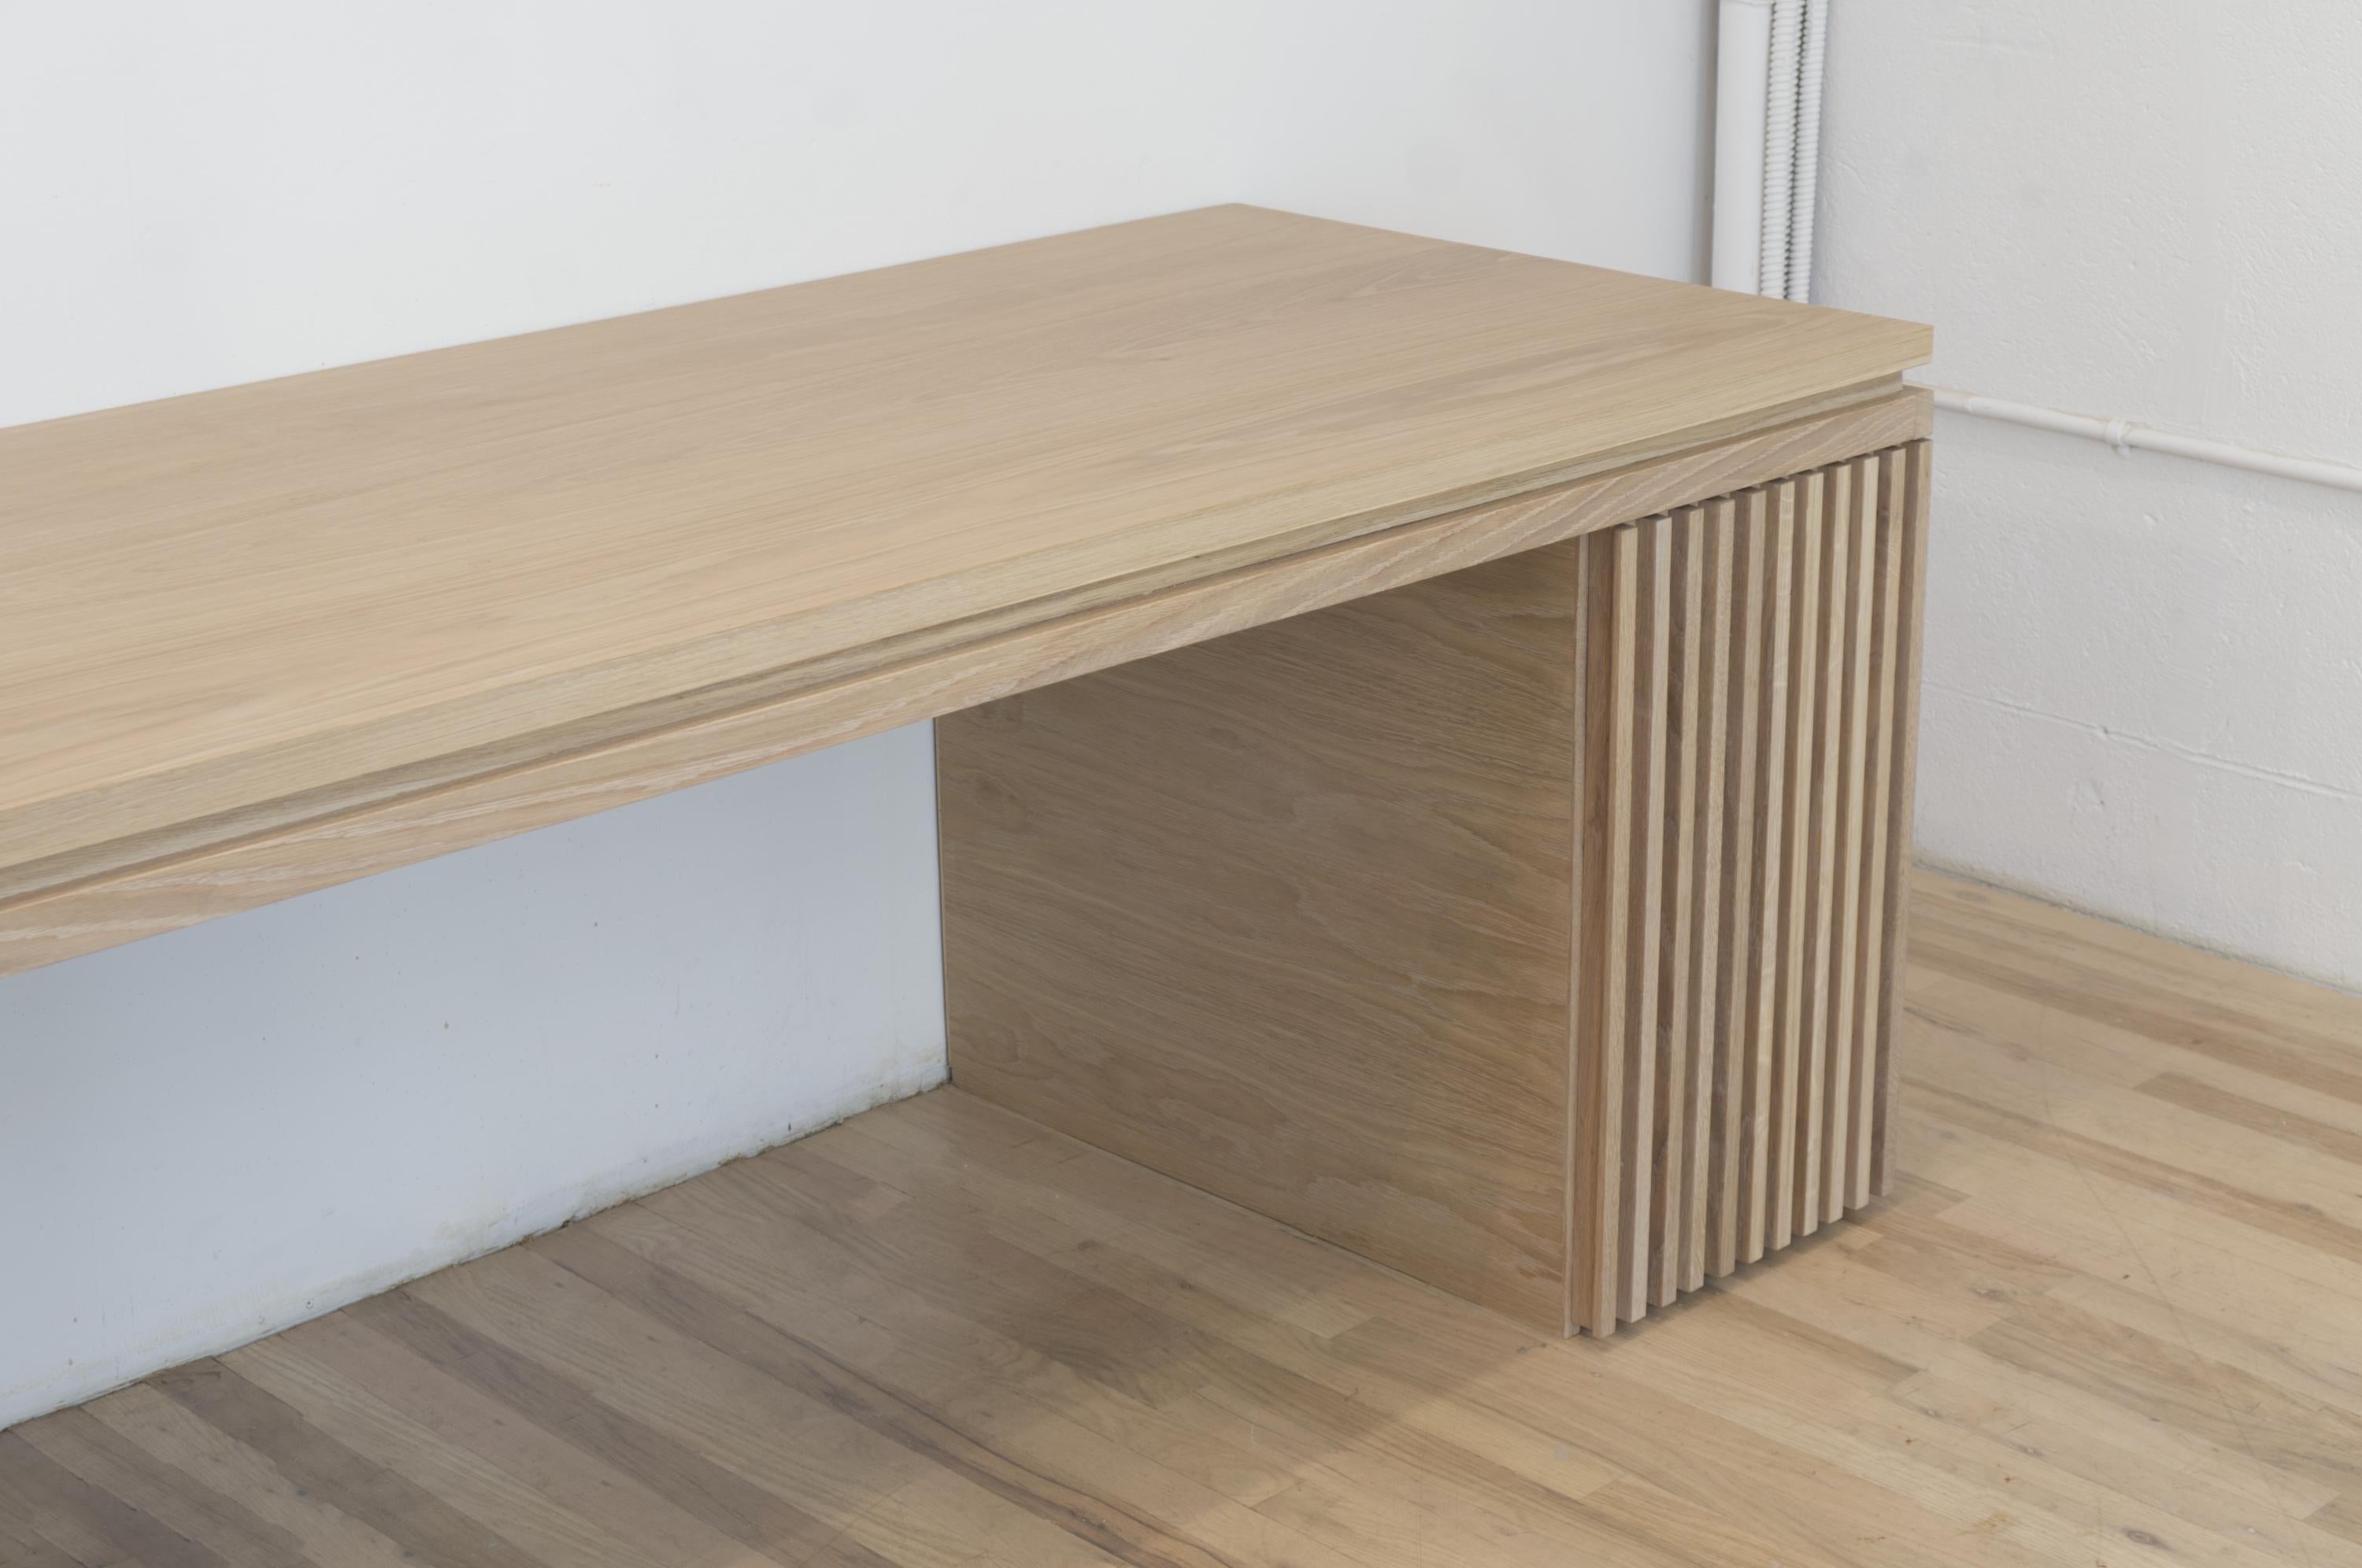 Dieser Tisch aus geschmolzenem Nussbaumholz besticht durch seine zauberhaften, abgeschrägten Kanten.
Handgefertigt aus massiver Eiche, eine perfekte Einrichtung für einen Schreibtisch.
Es wurde für den Innenraum einer Schaufenstergalerie entworfen